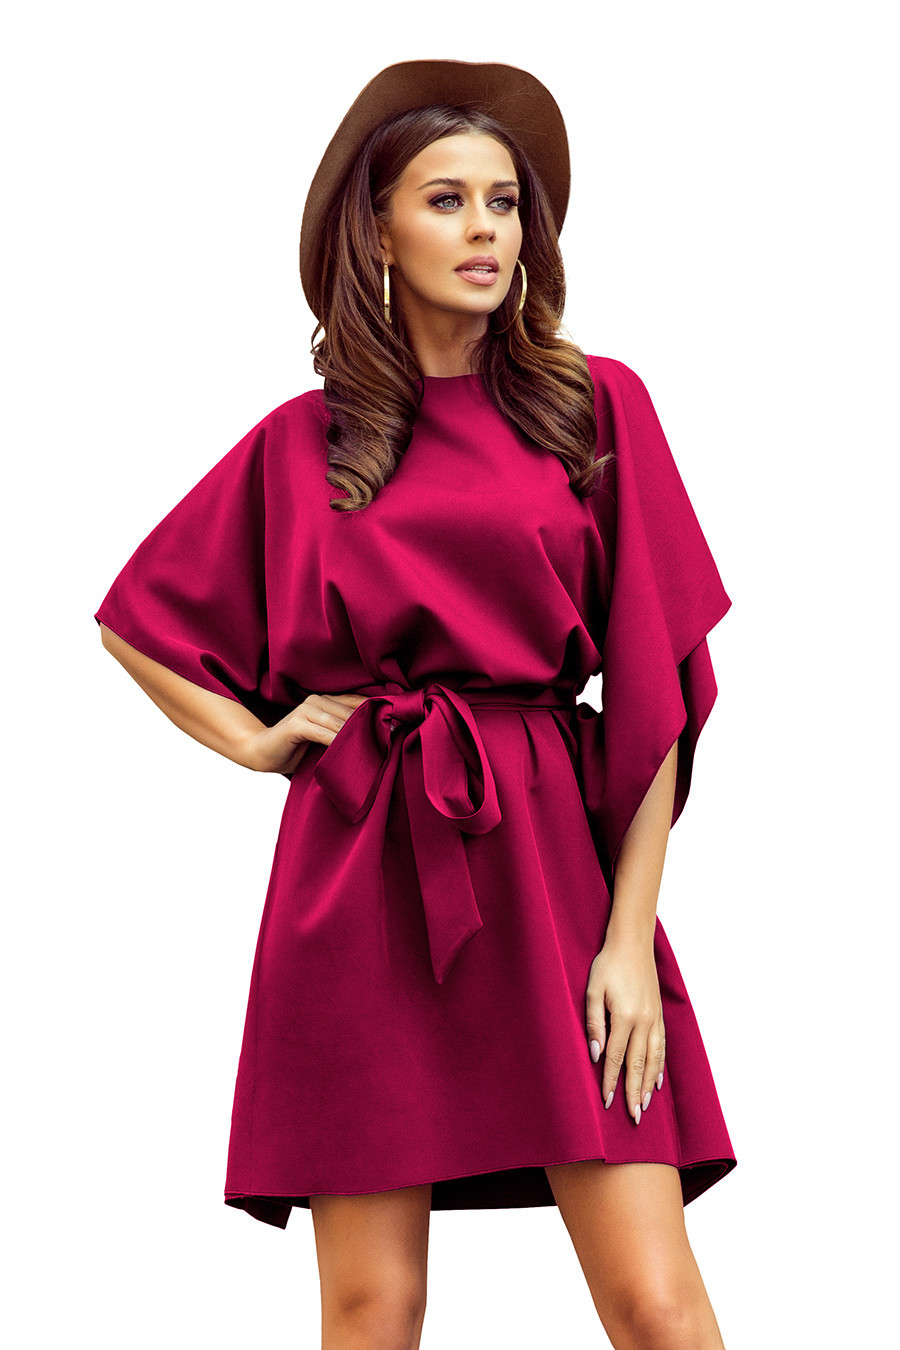 SOFIA - Dámské motýlkové šaty ve vínové bordó barvě se zavazováním v pase 287-18 2XL/3XL